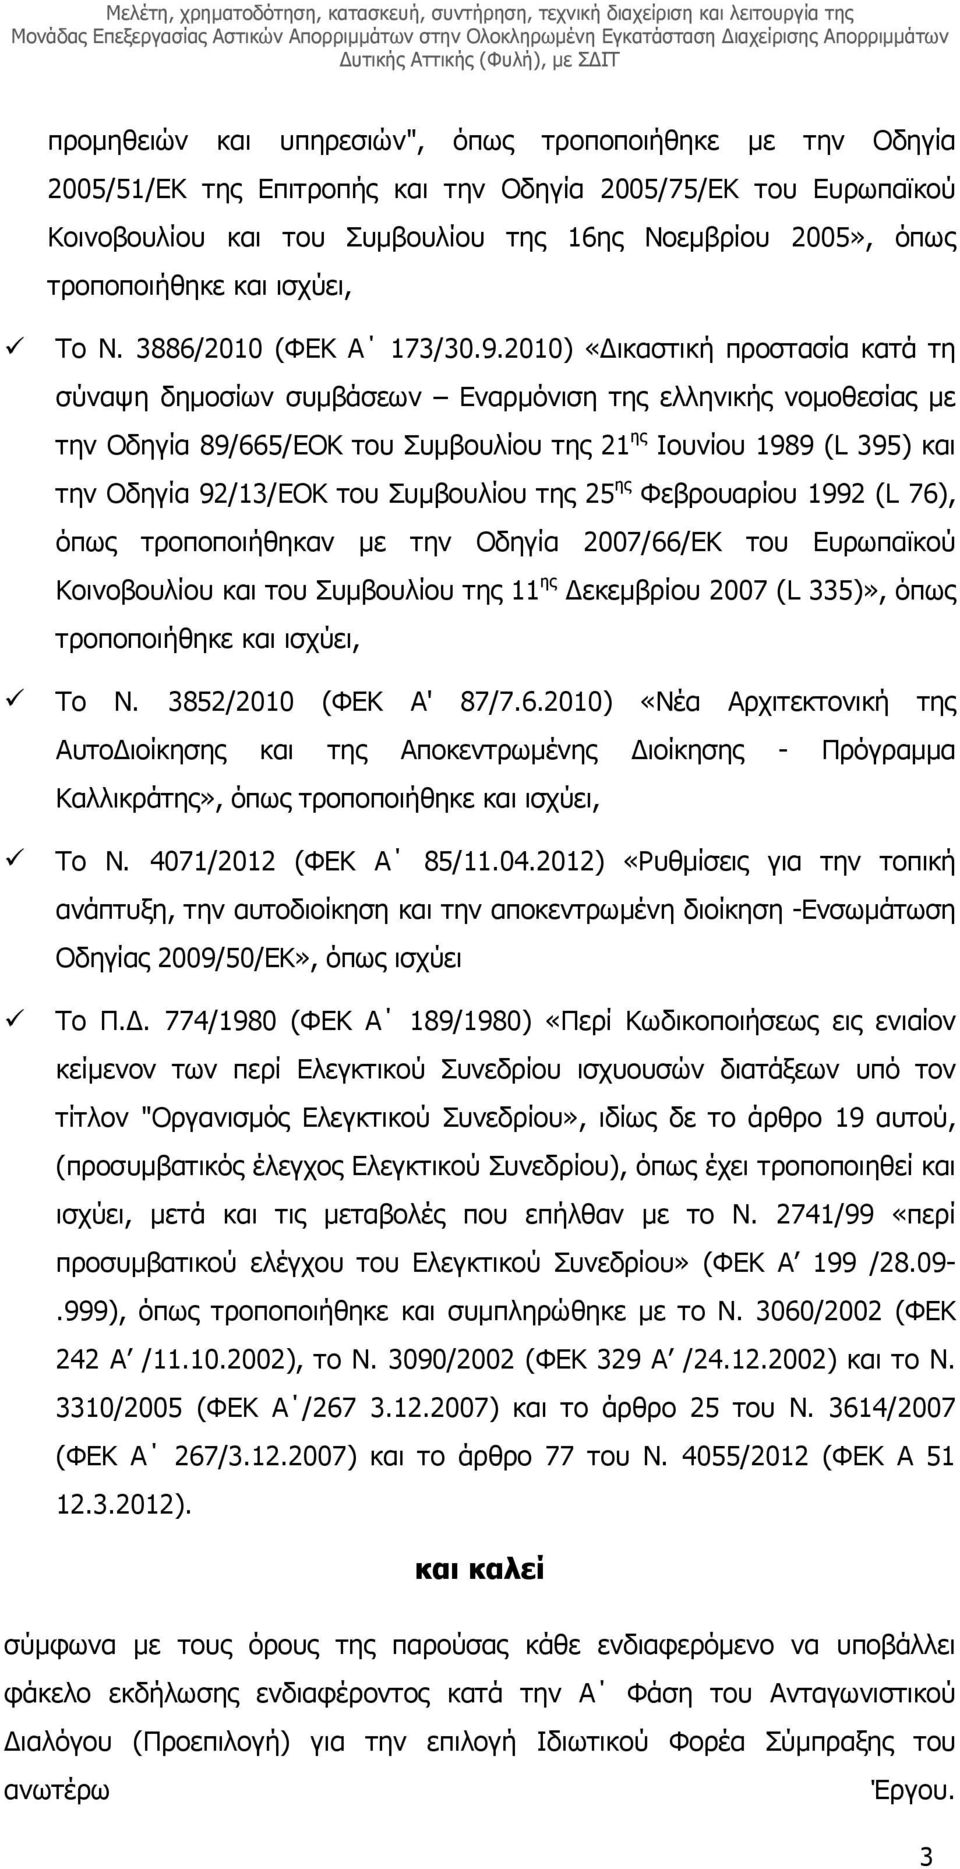 2010) «ικαστική προστασία κατά τη σύναψη δηµοσίων συµβάσεων Εναρµόνιση της ελληνικής νοµοθεσίας µε την Οδηγία 89/665/ΕΟΚ του Συµβουλίου της 21 ης Ιουνίου 1989 (L 395) και την Οδηγία 92/13/ΕΟΚ του